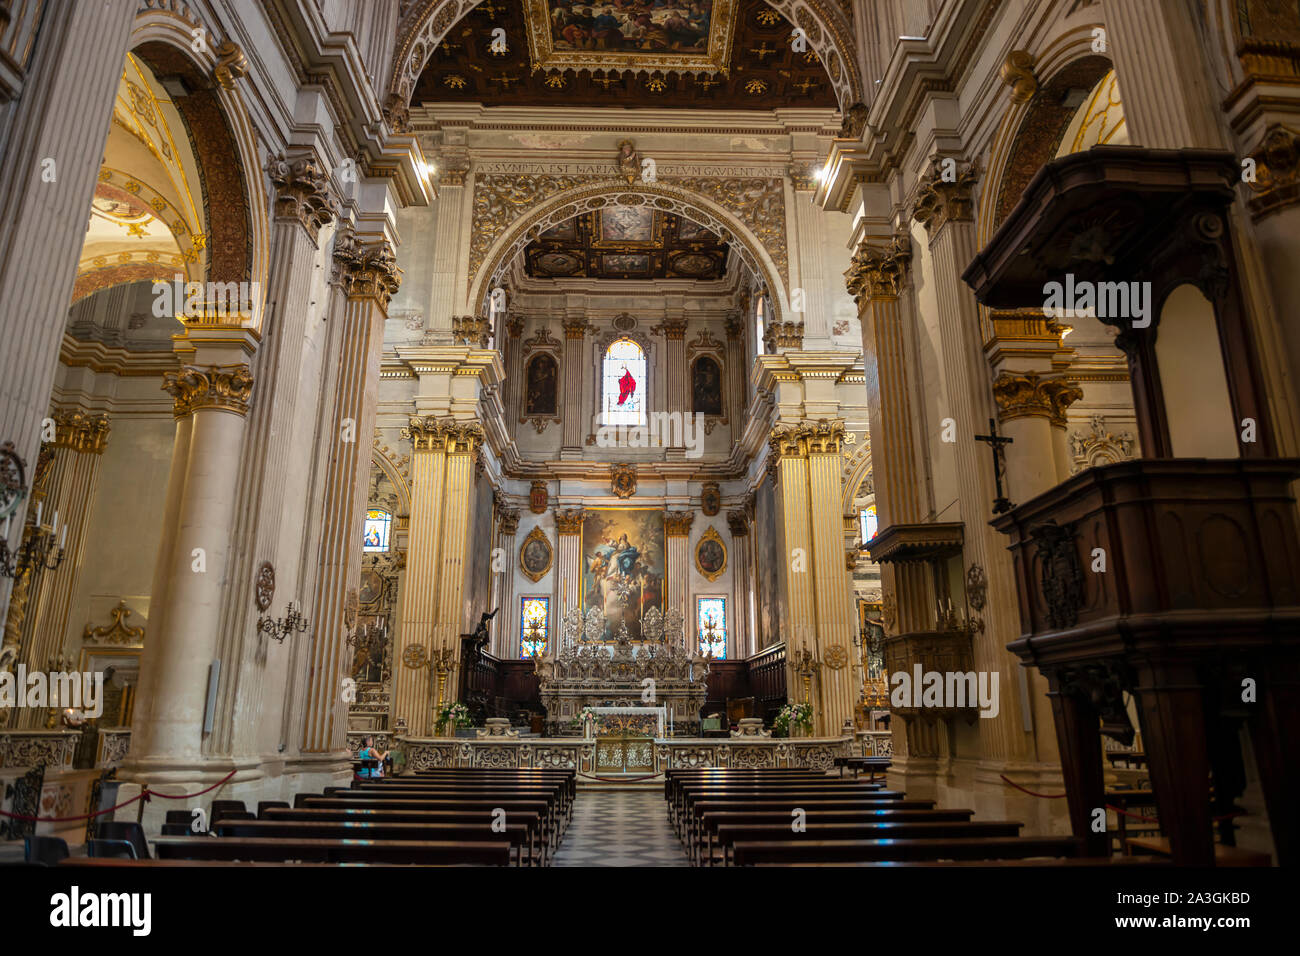 Interno della Cattedrale di Santa Maria Assunta (Chiesa di Santa Maria Assunta) su Piazza del Duomo a Lecce, Puglia (Puglia) nel Sud Italia Foto Stock